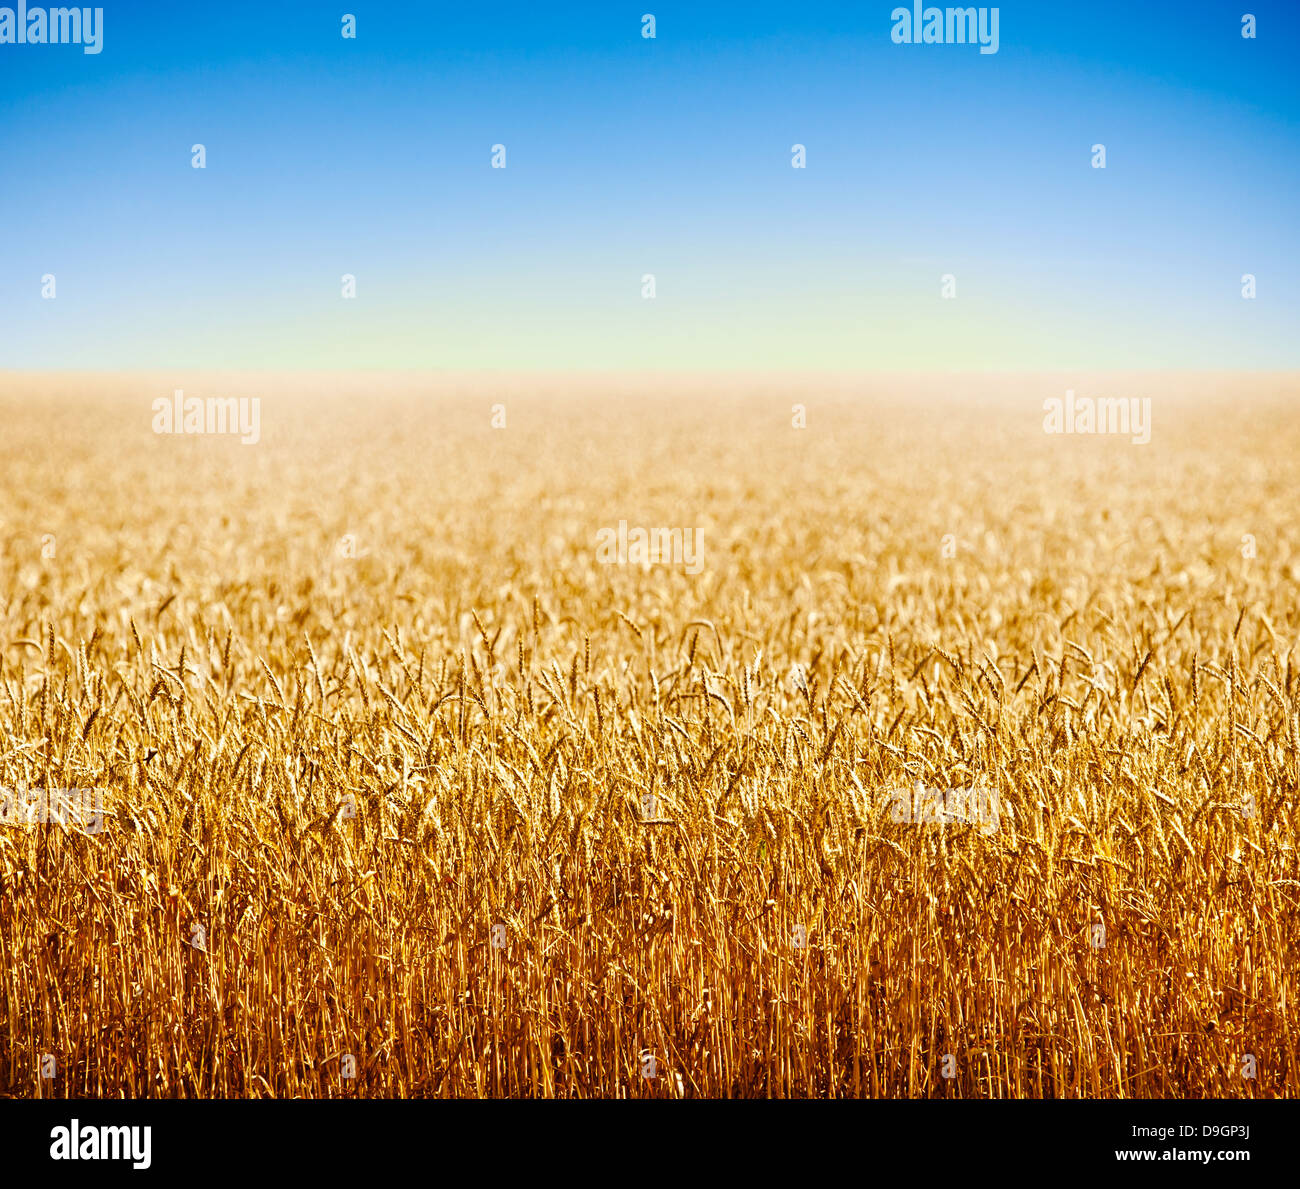 Campo de trigo de oro contra el cielo azul profundo Foto de stock